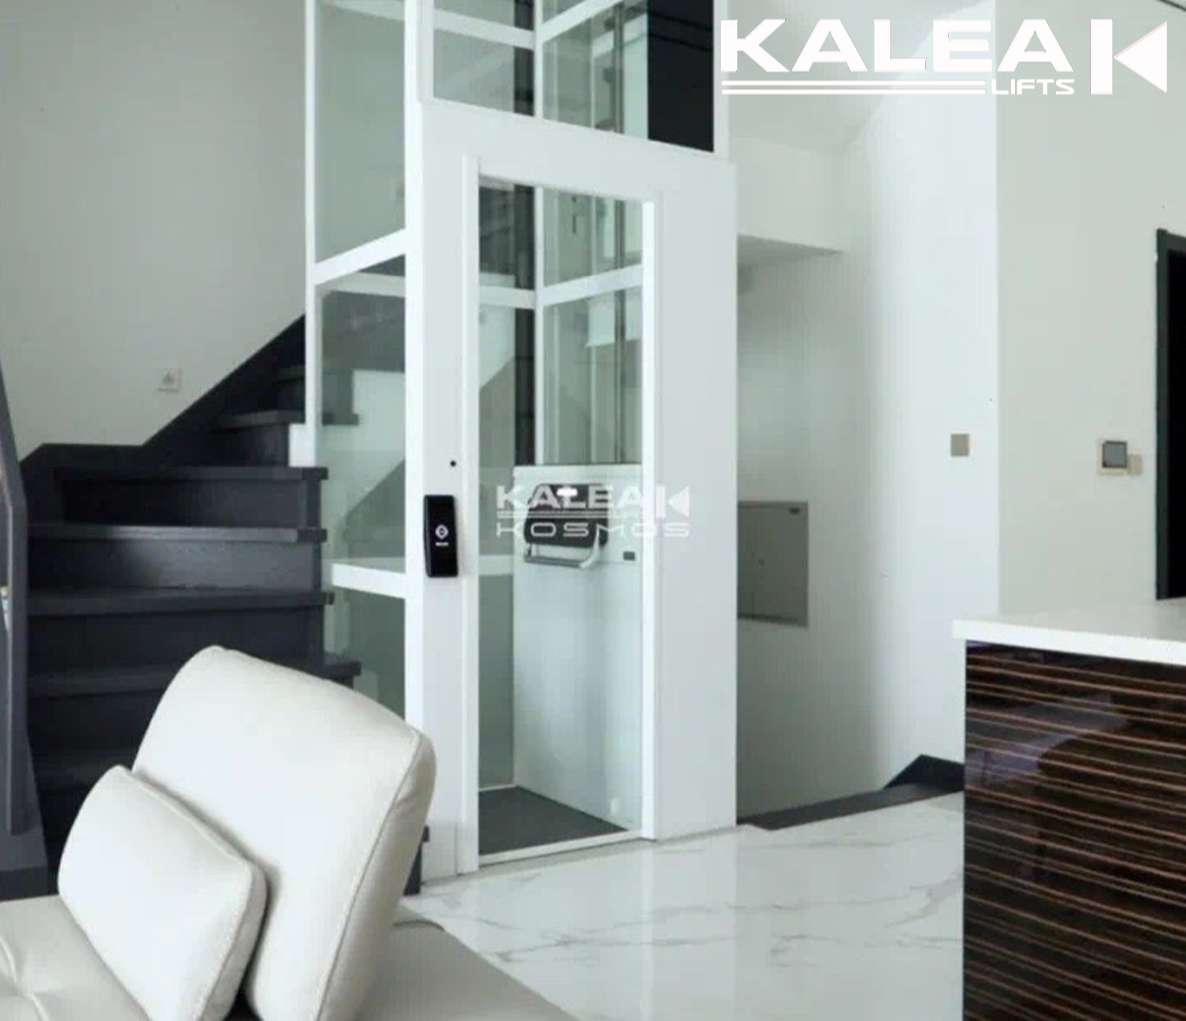 Thang máy gia đình Kalea K60 được lắp đặt thực tế ở nhà ở